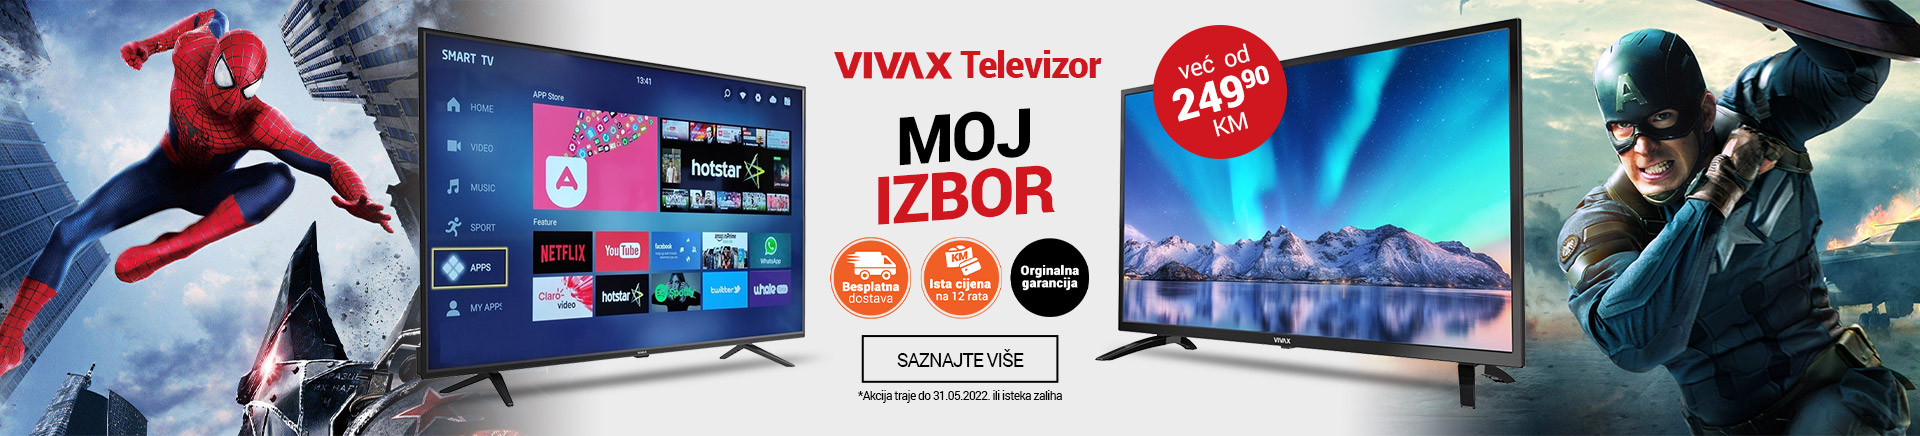 BA VIVAX Televizori - Moj izbor TV 2 MOBILE 380 X 436.jpg